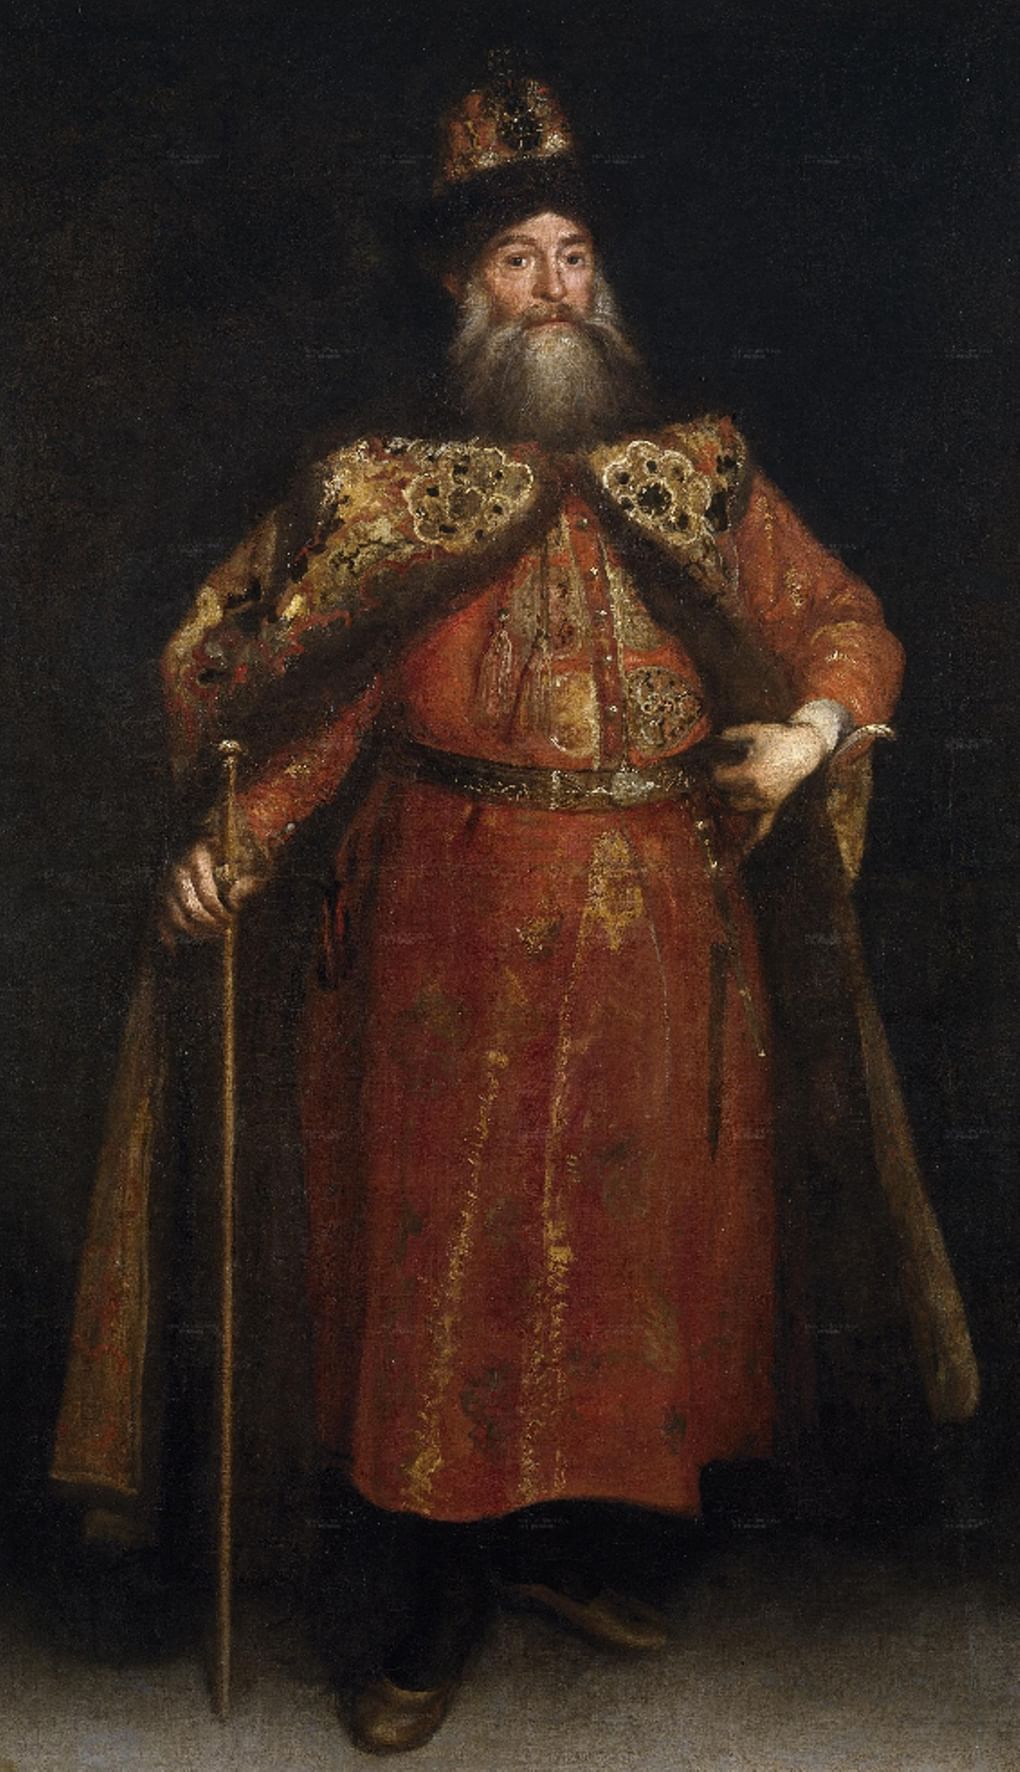 Хуан Карреньо де Миранда. Портрет Петра Потемкина. 1681-1682. Национальный музей Прадо, Мадрид, Испания